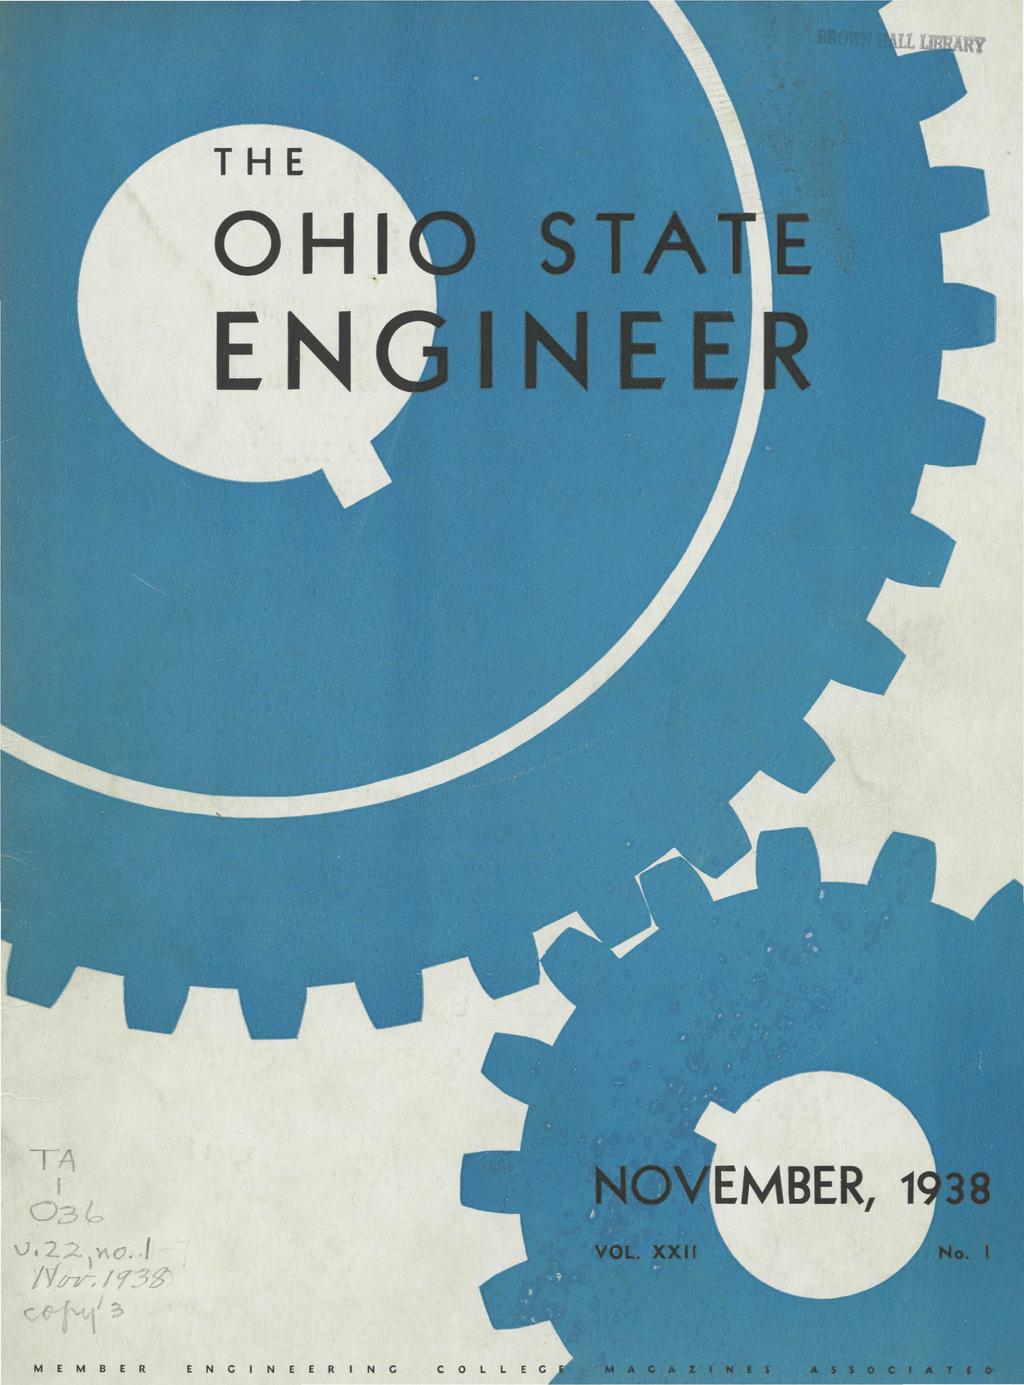 THE OHIO STATE ENGINEER NOVEMBER, 1938 VOL. XXII Ho.